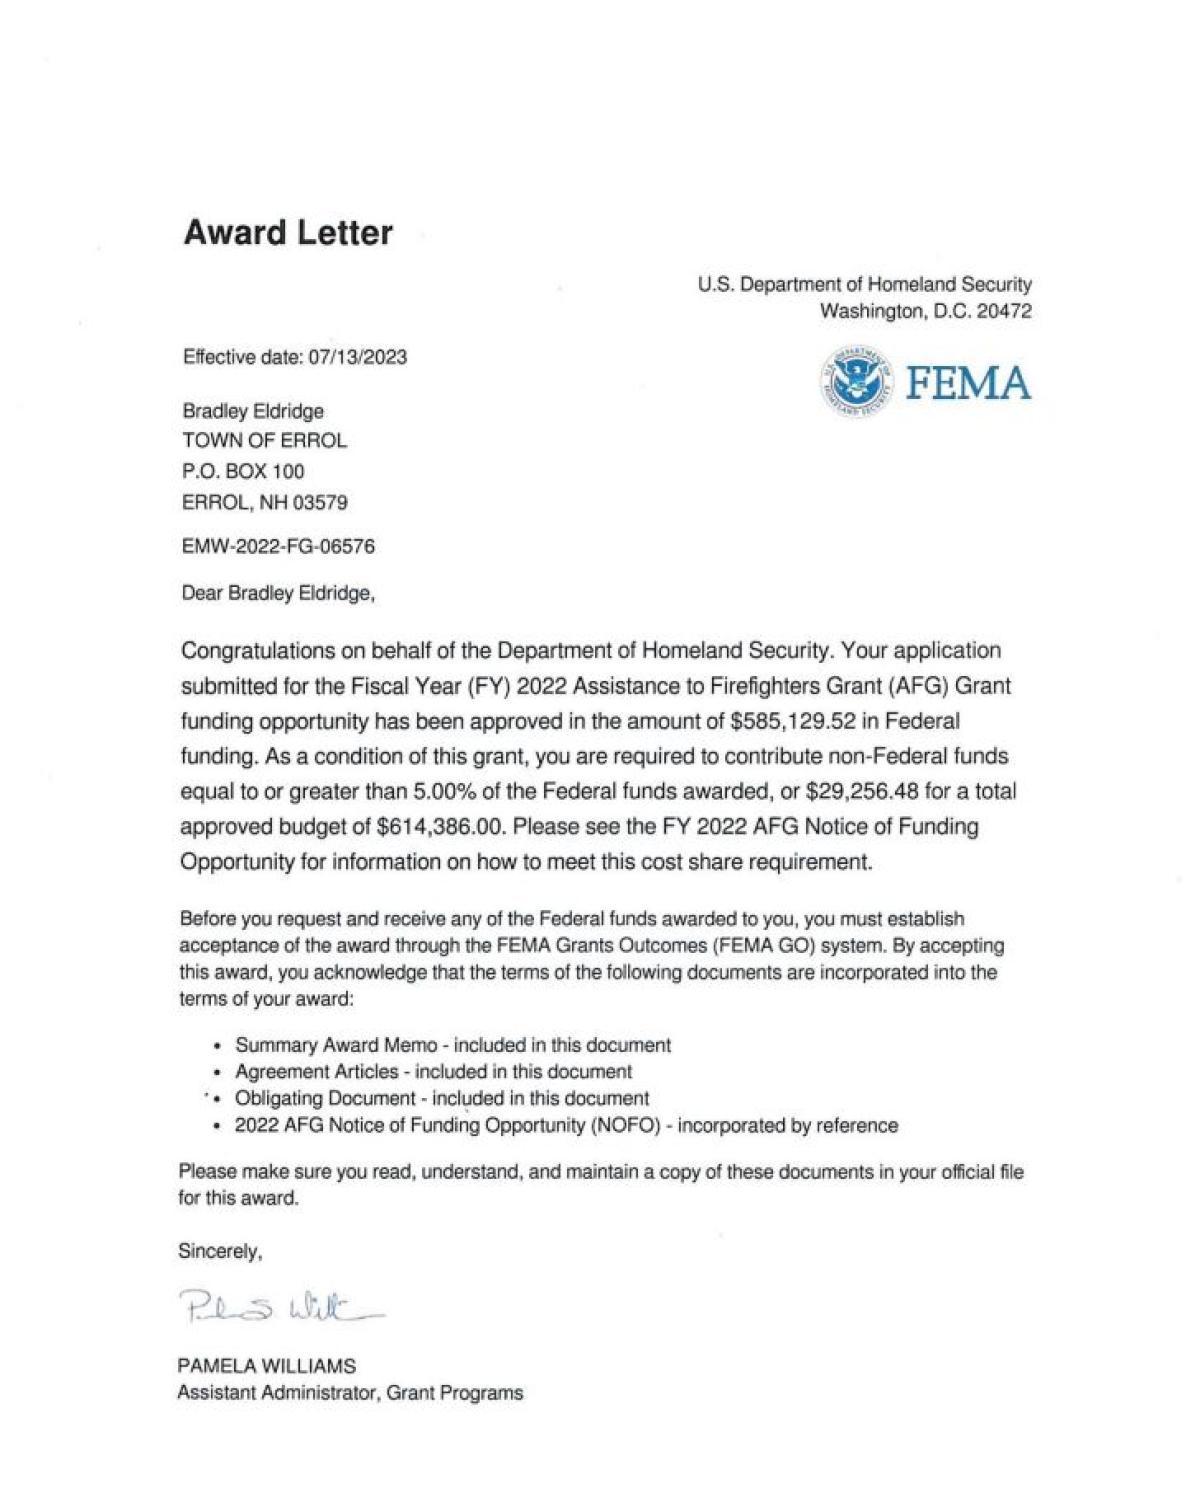 FEMA Grant Award Letter